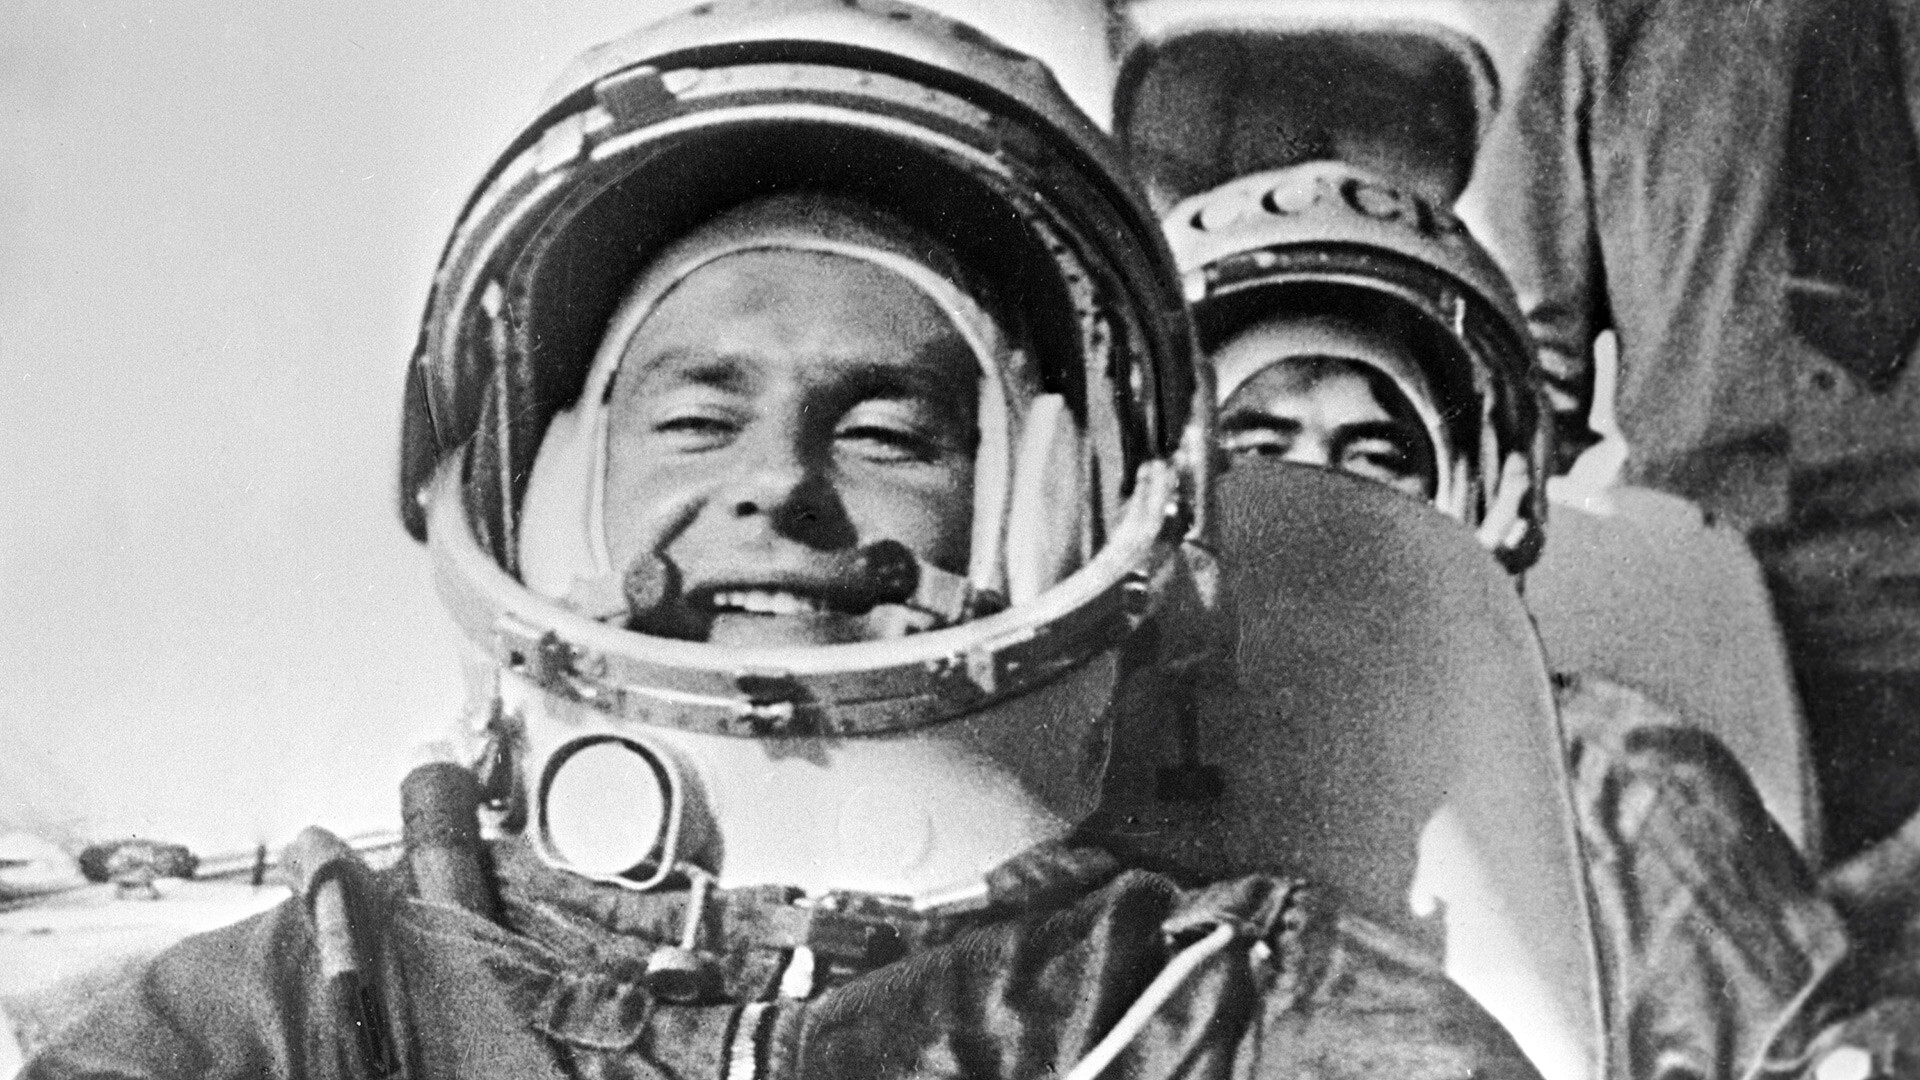 Первый советский космонавт совершивший полет вокруг земли